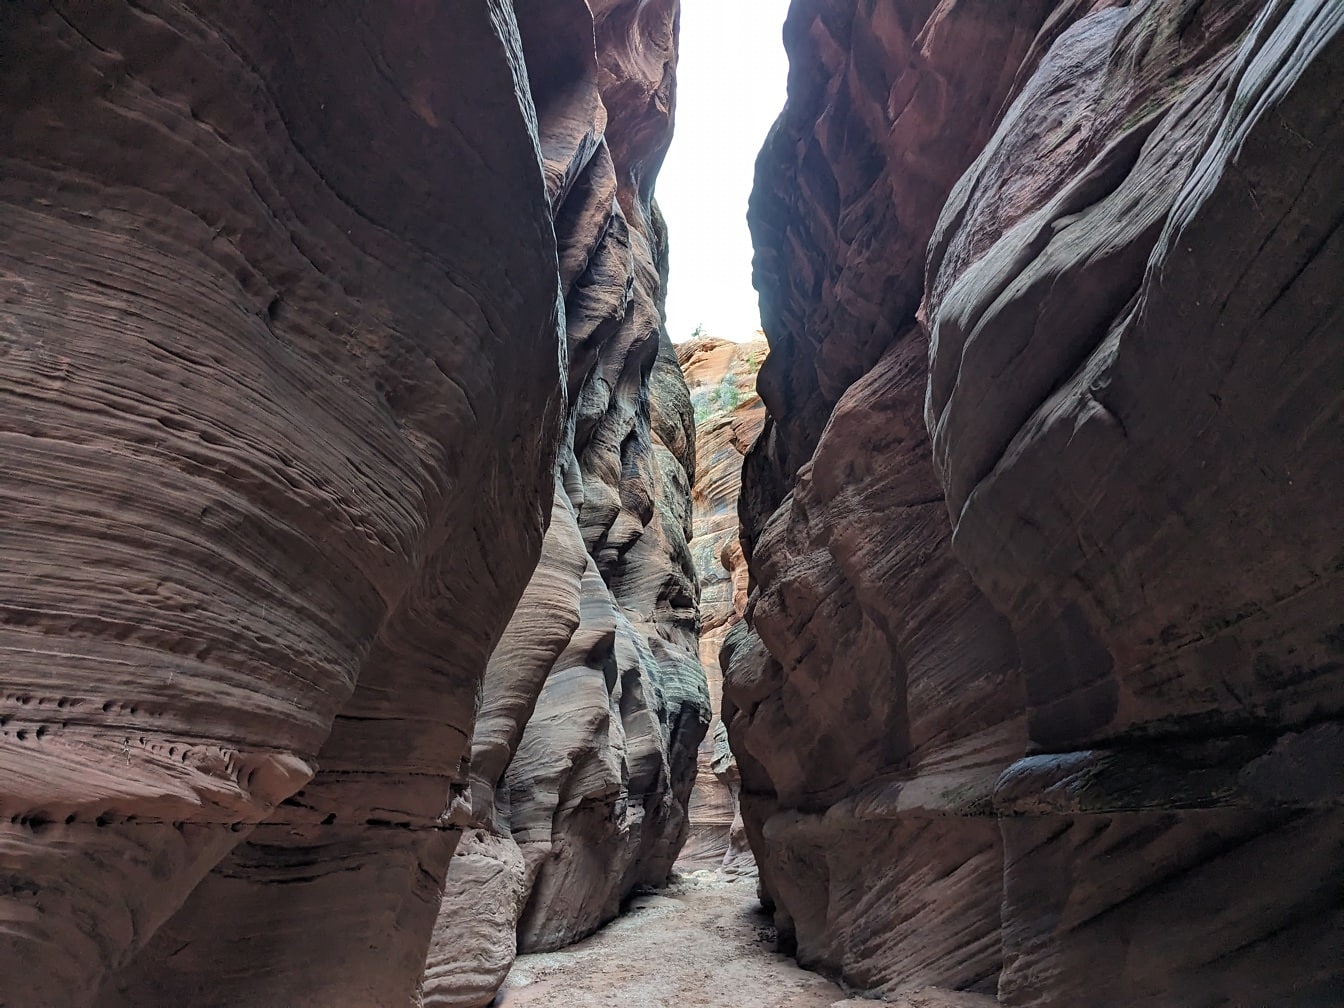 Ombra in passaggio stretto nel canyon nel parco naturale del deserto